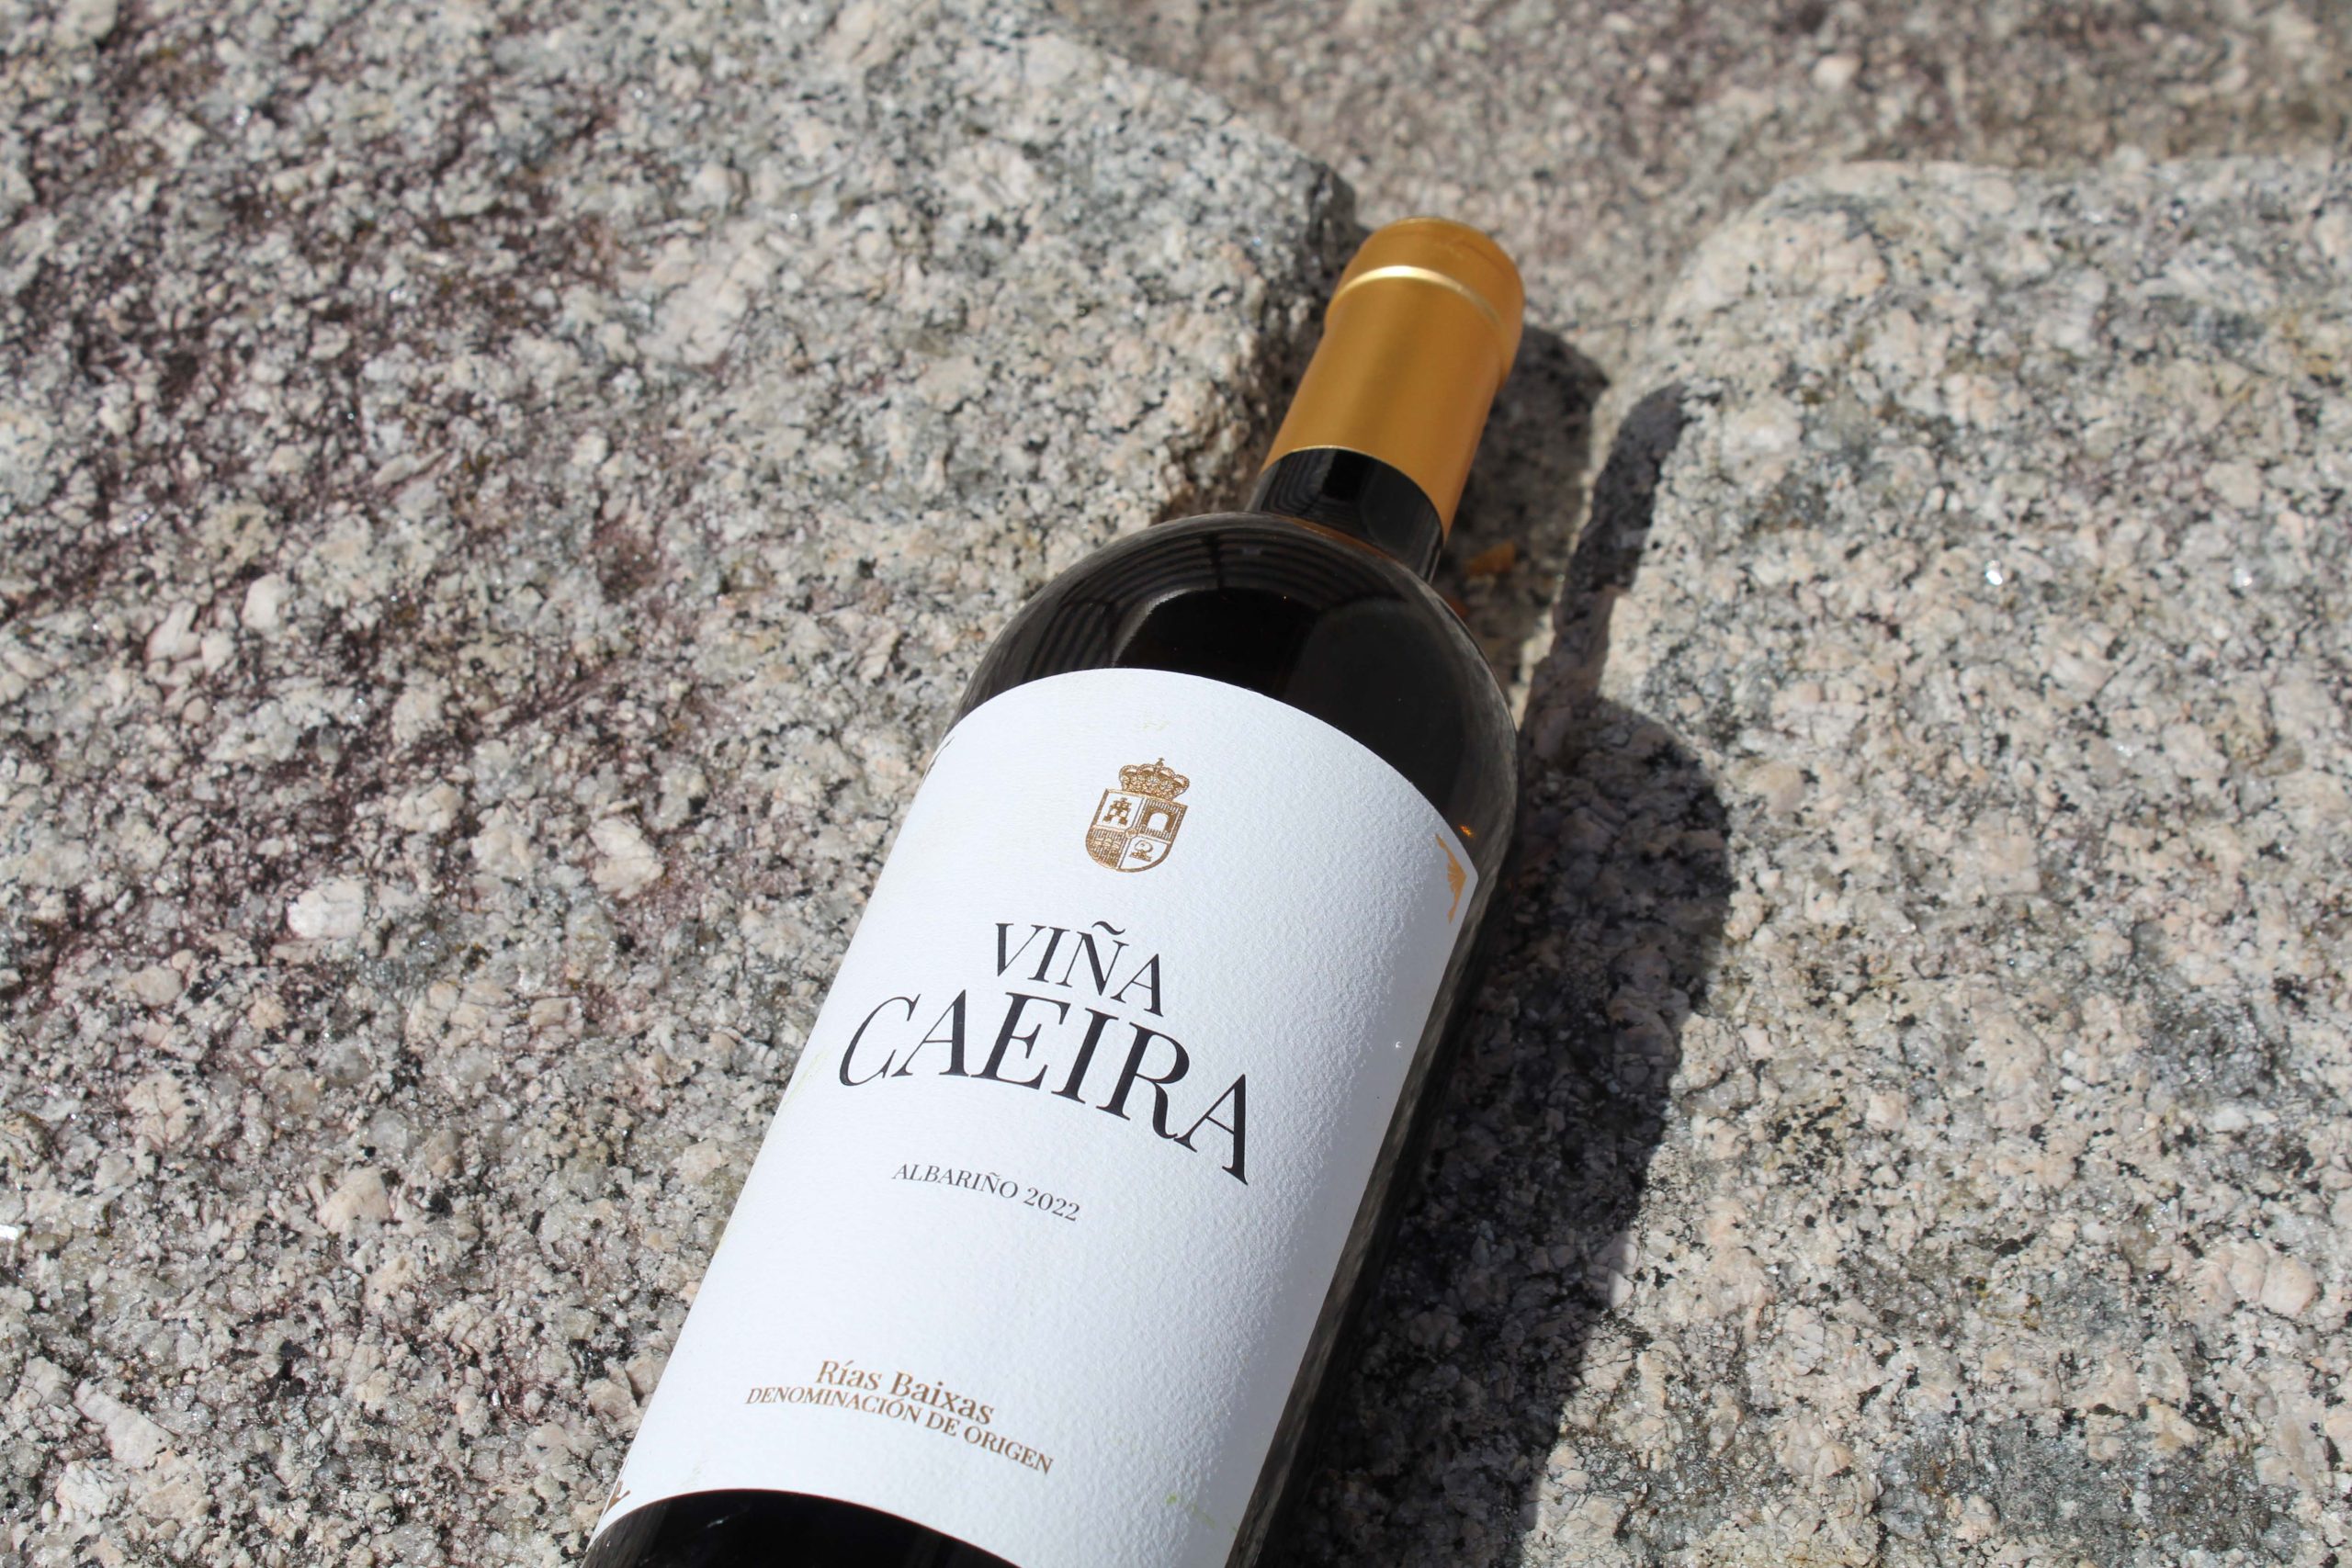 Carlos Moro presenta ‘Viña Caeira’, el primer vino de su bodega en Rías Baixas